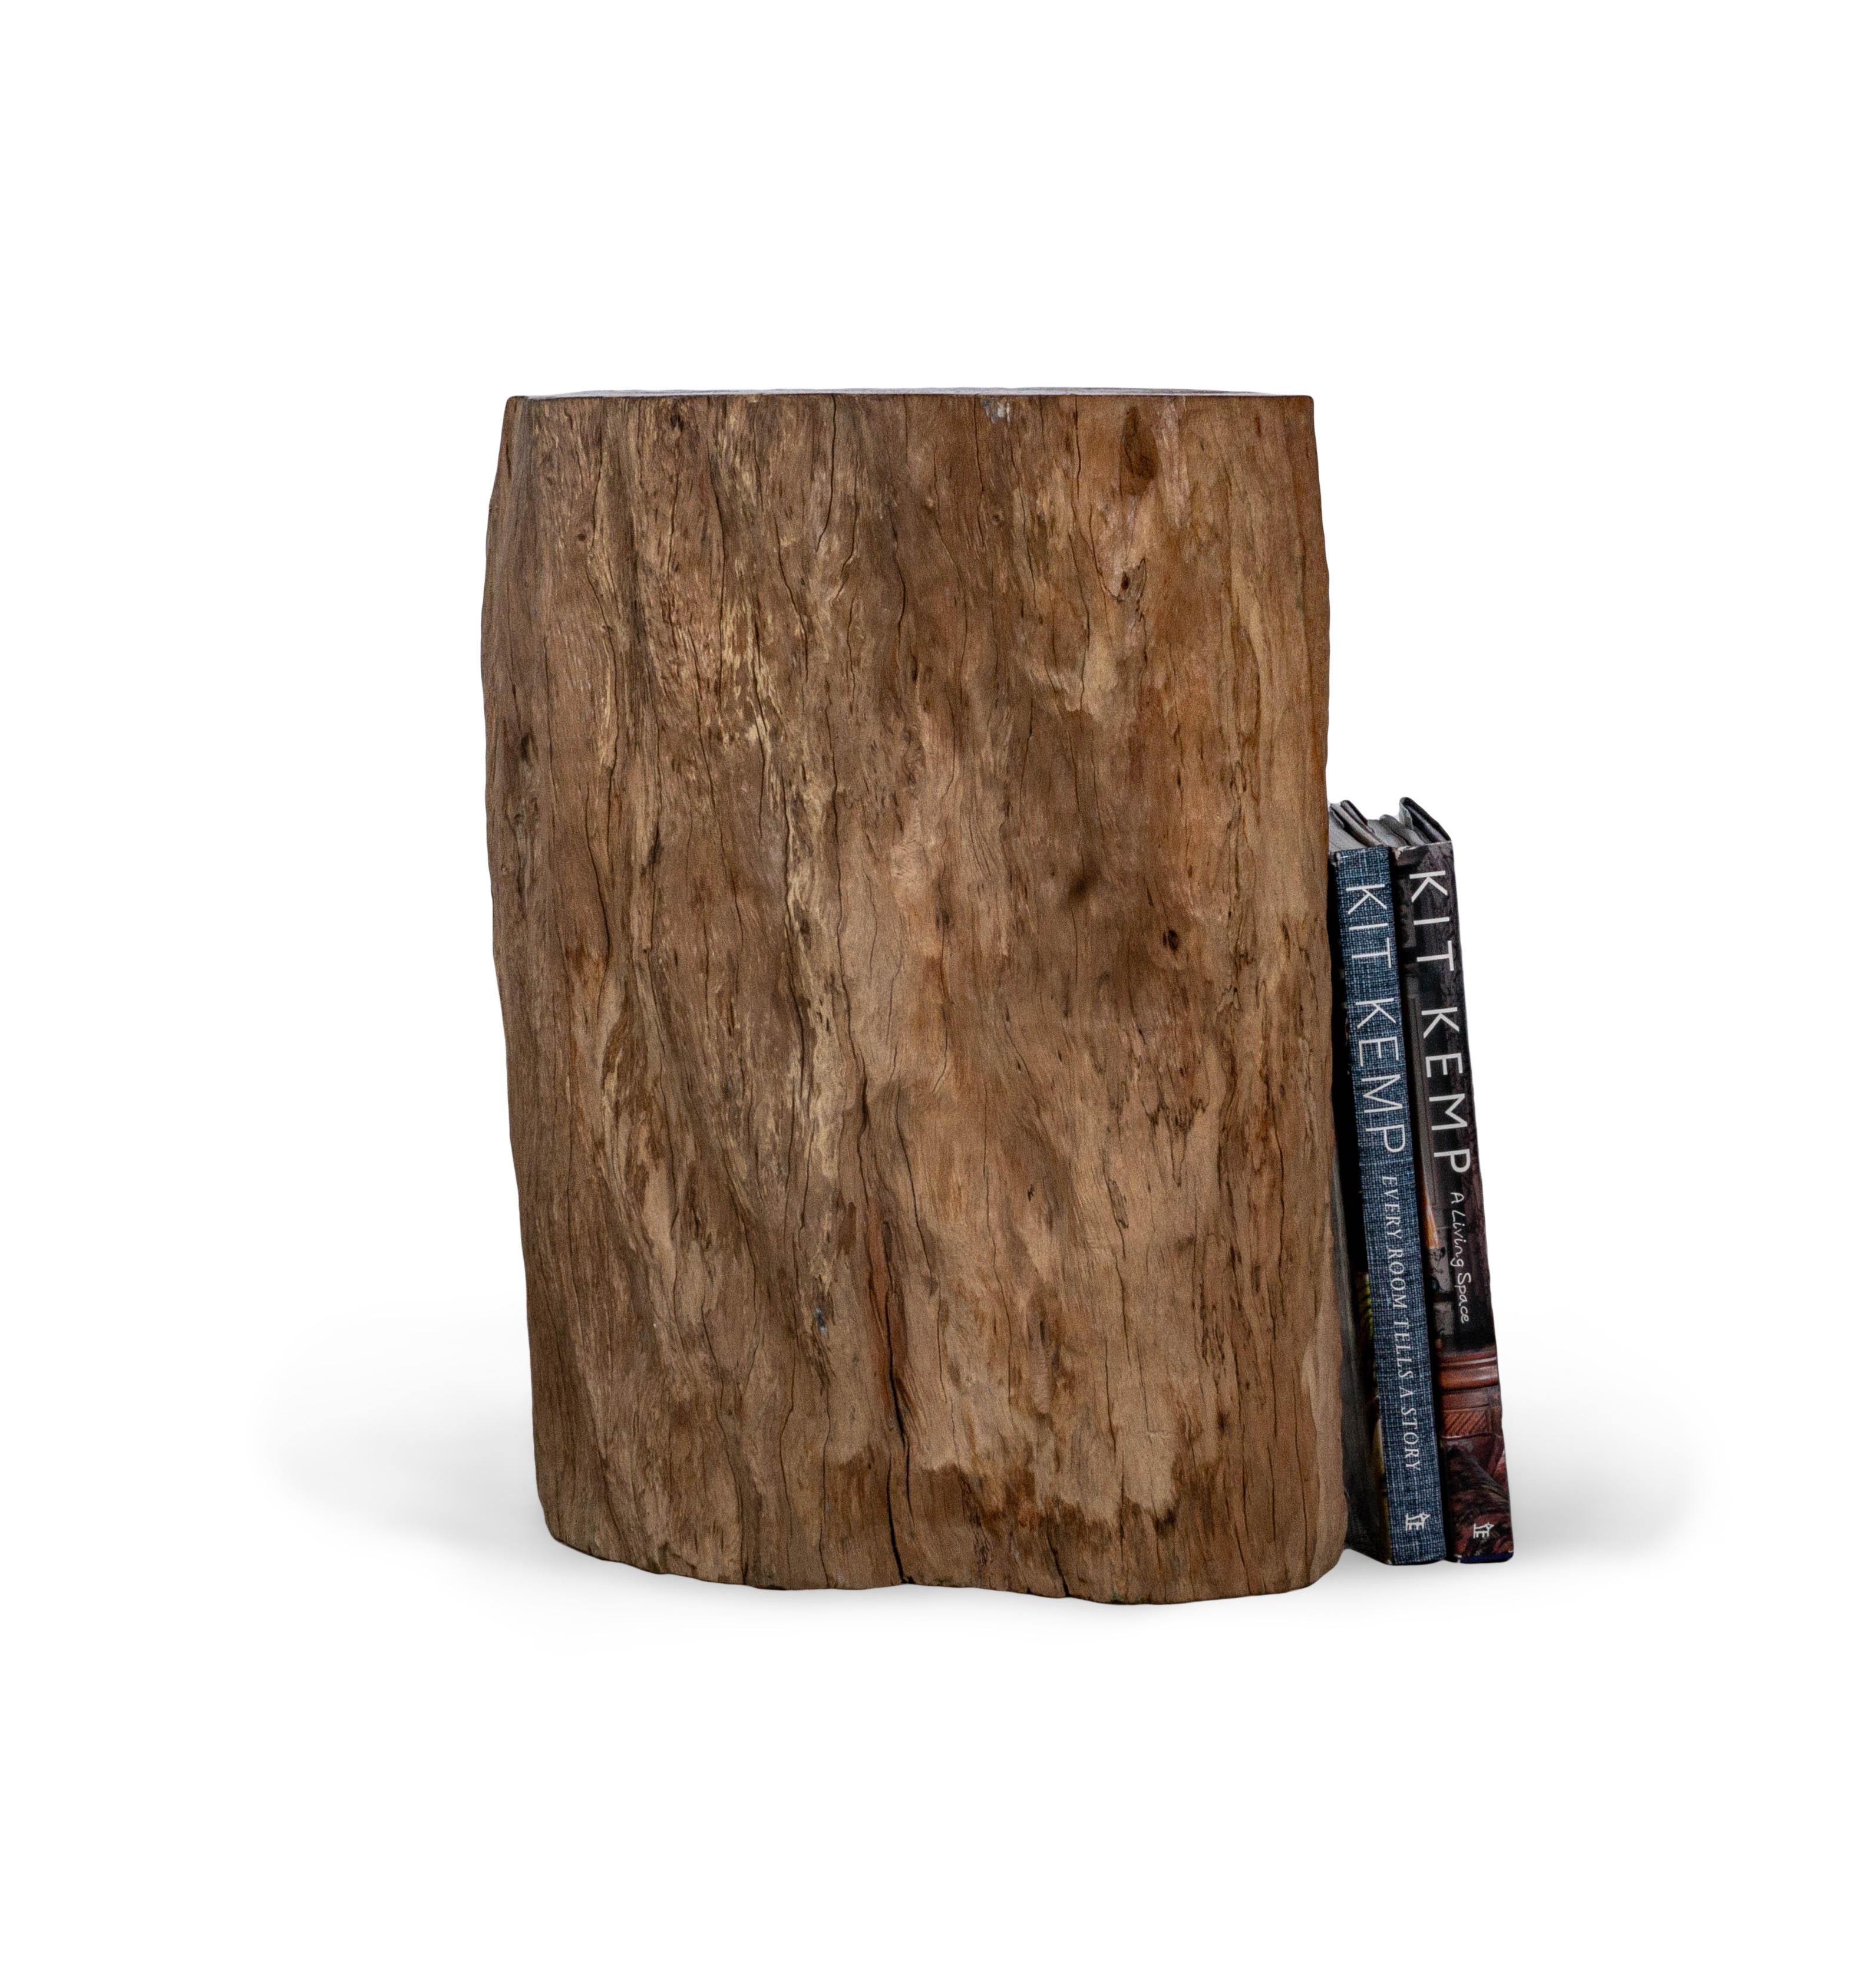 Dieser Beistelltisch aus Lychee-Holz in organischer Form hat eine einzigartige Form, die nur in der Natur zu finden ist. Er ist der perfekte Weg, um die Natur ins Haus zu holen. Dieser Beistelltisch aus Litschi-Holz in einem schönen Cidre-Farbton